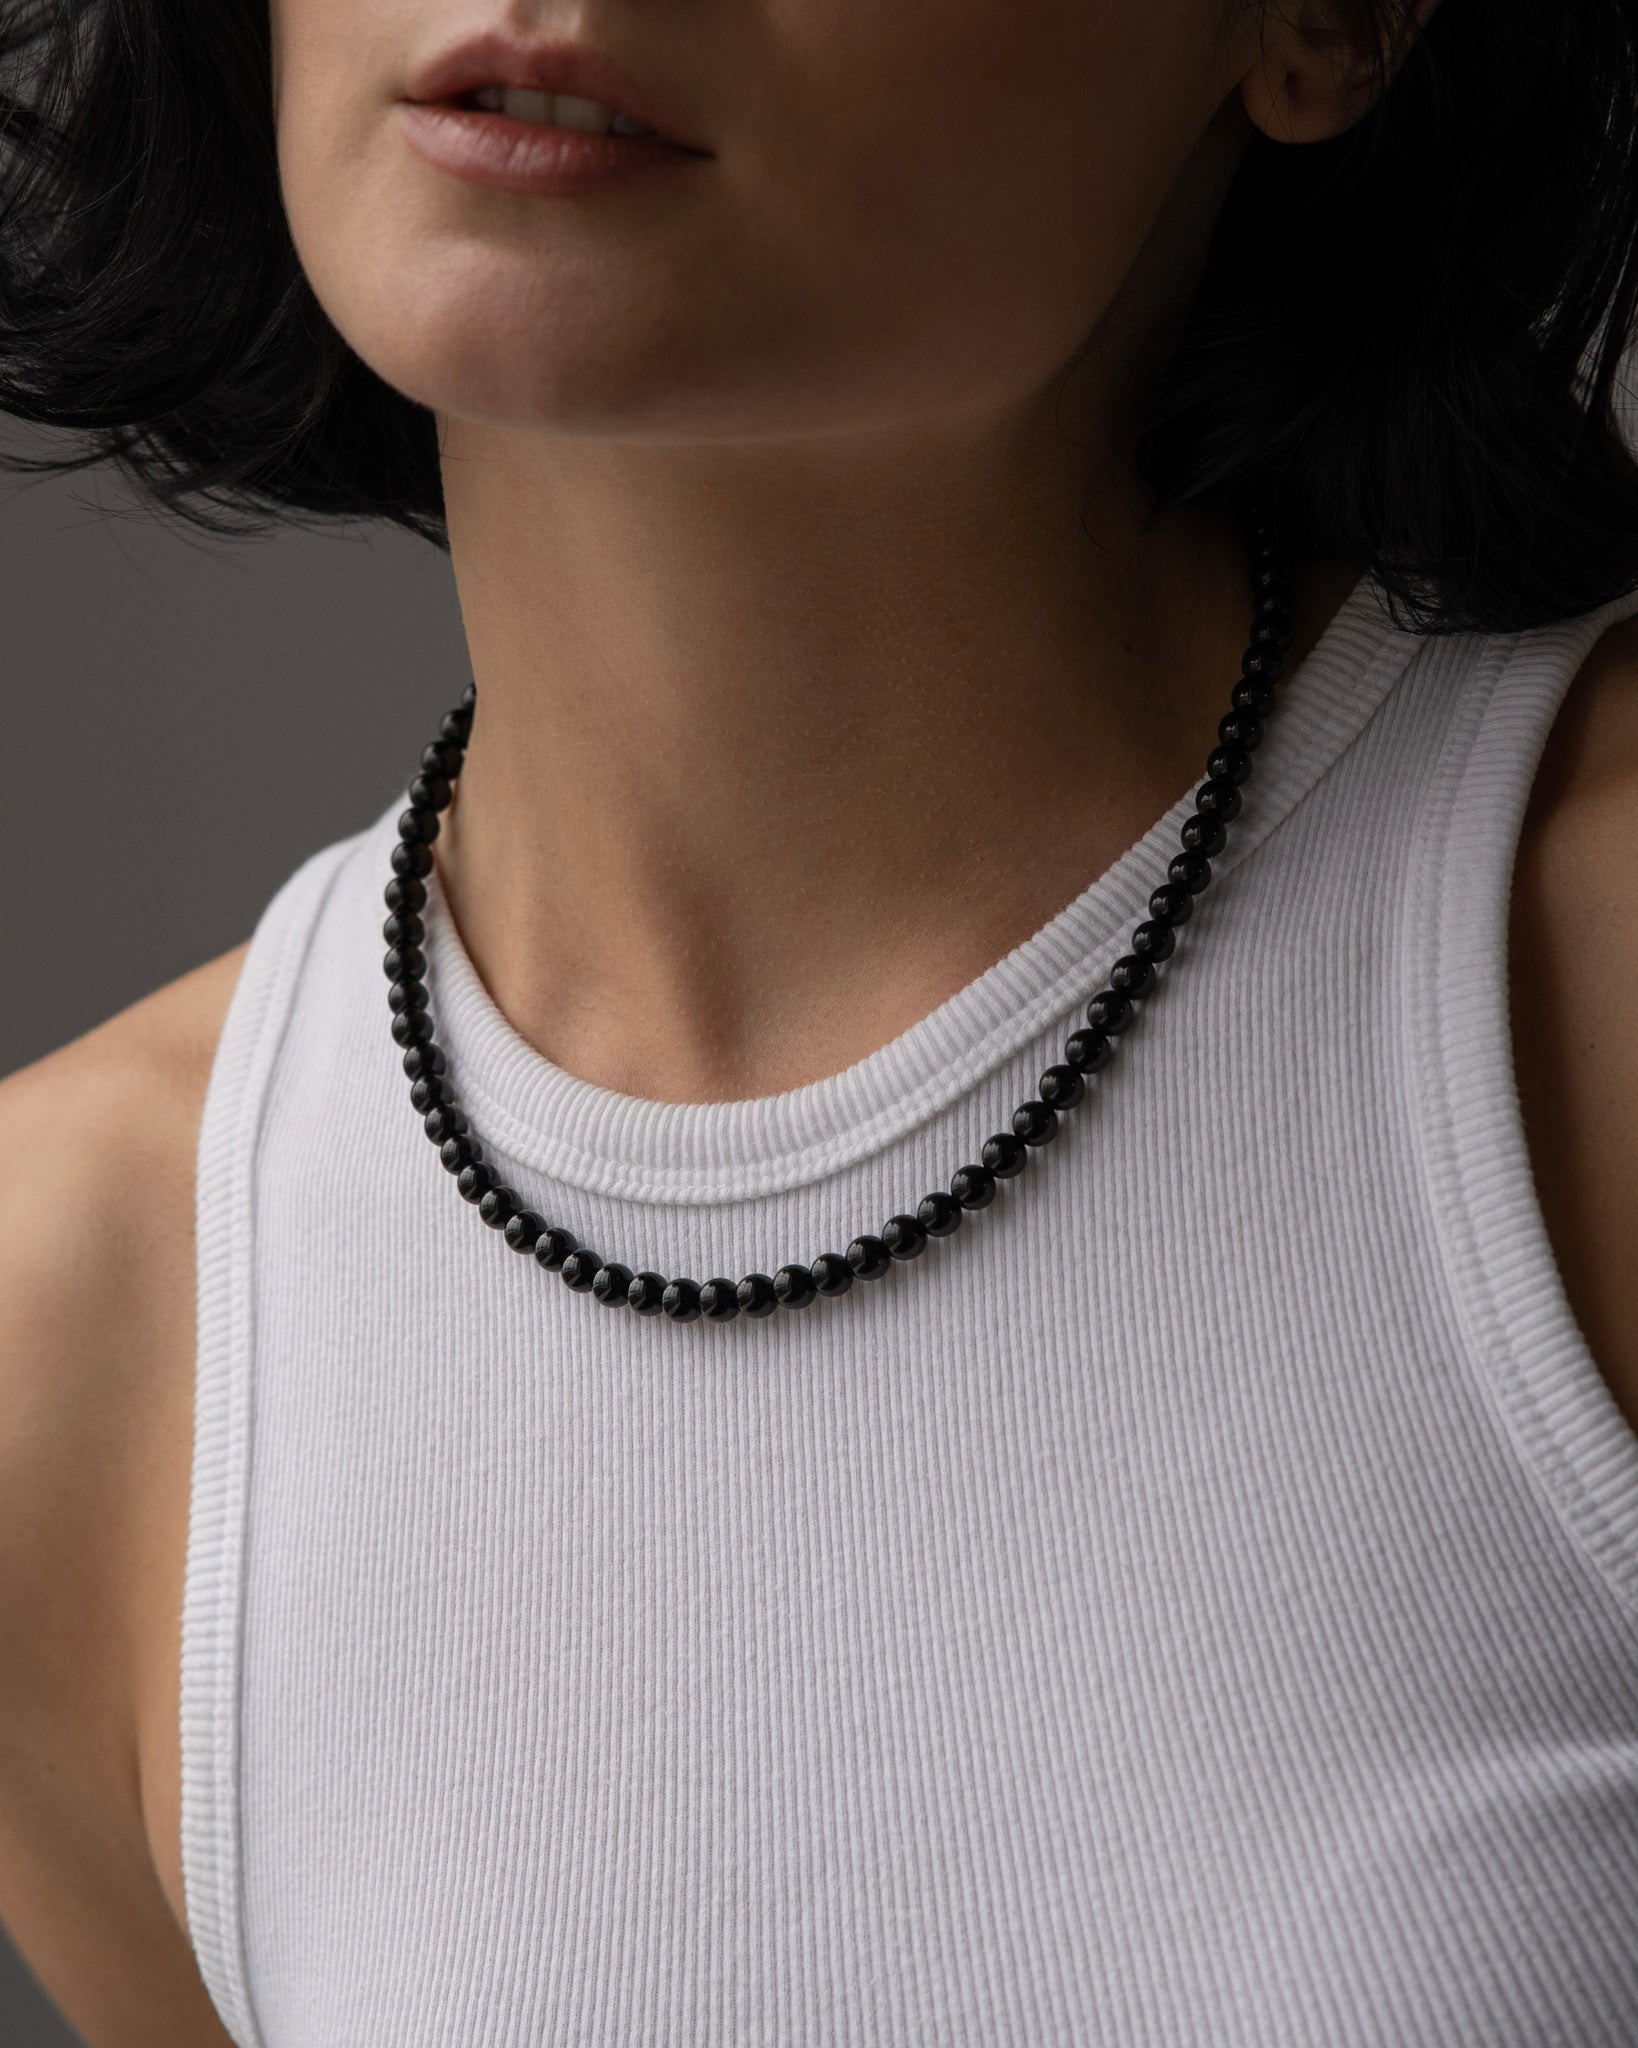 FJ Watches black pearls beads necklace men women 45cm 50cm 6mm onyx stone pierre collier noir women femme